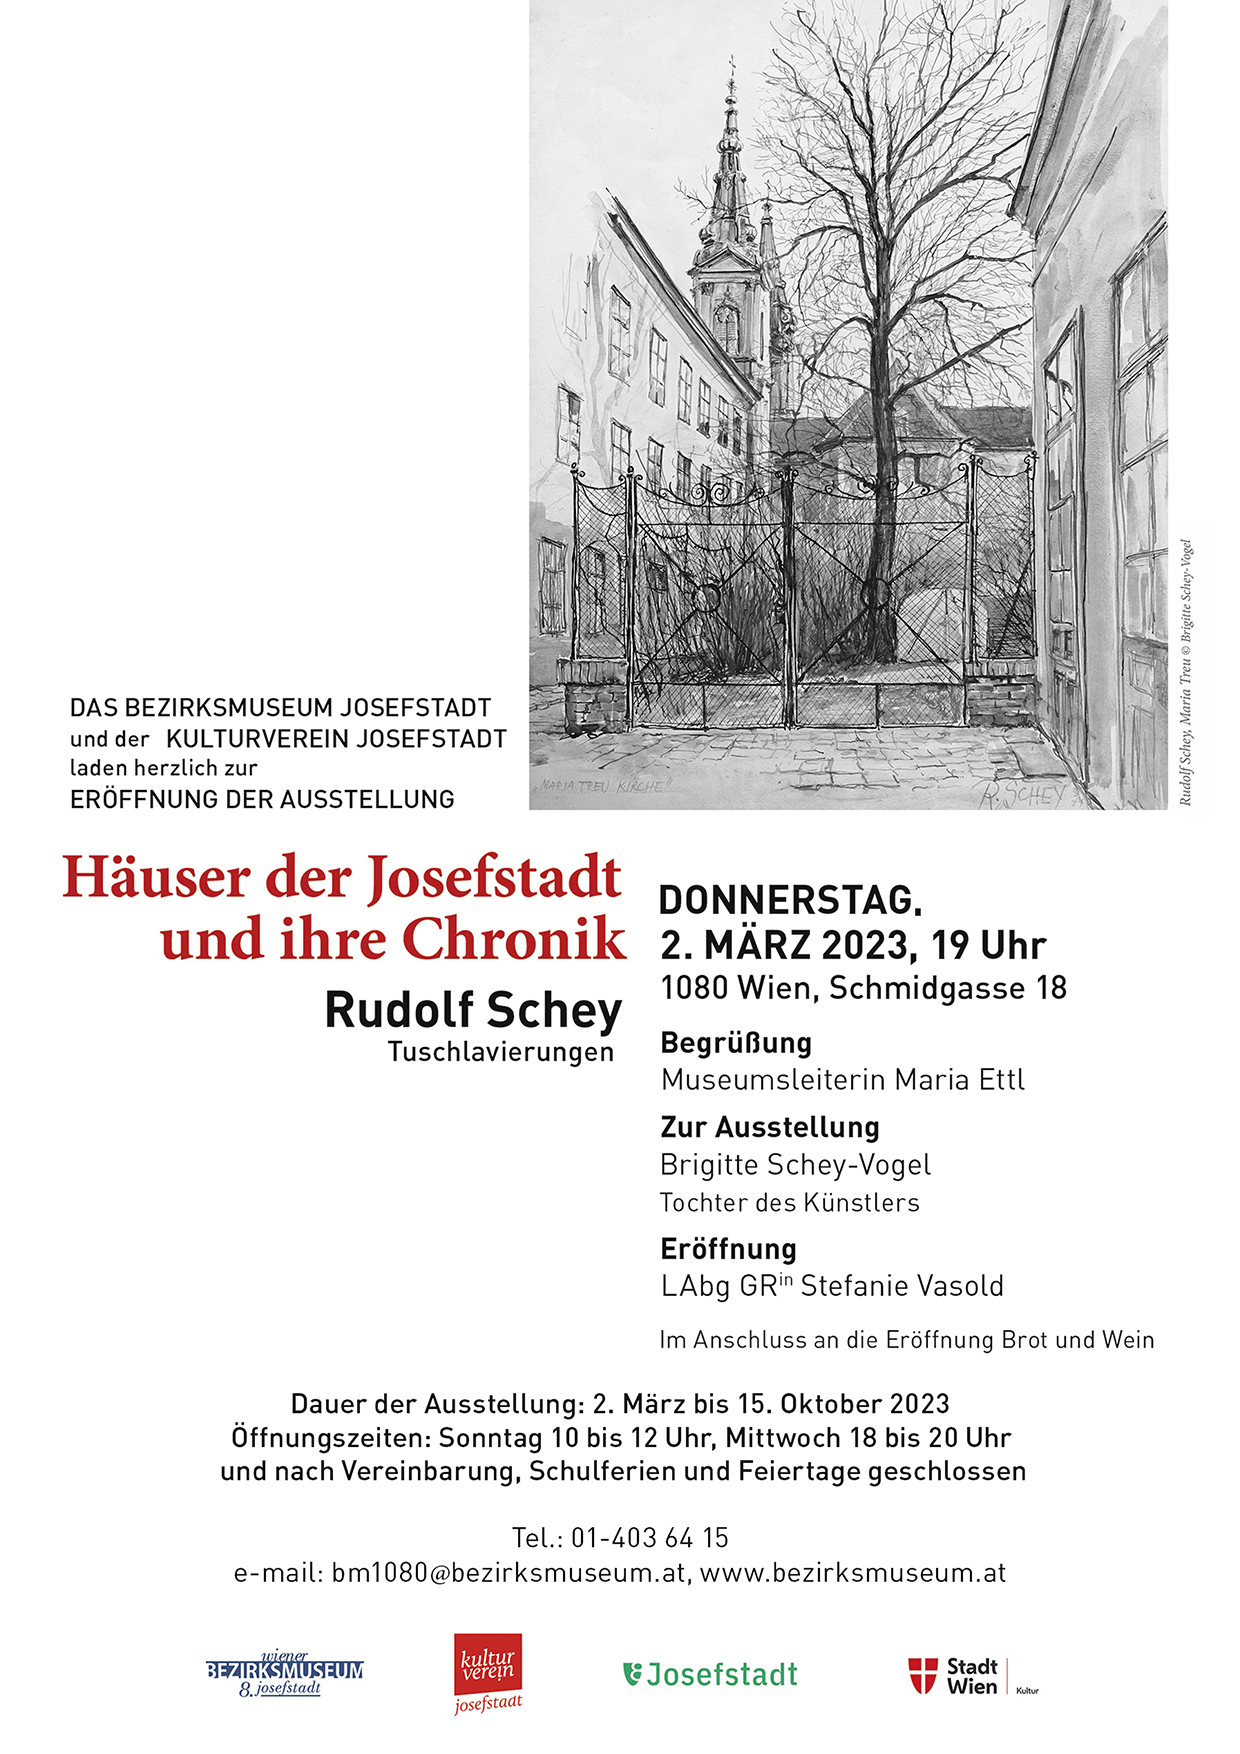 Häuser der Josefstadt und ihre Chronik - Rudolf Schey - Tuschlavierungen